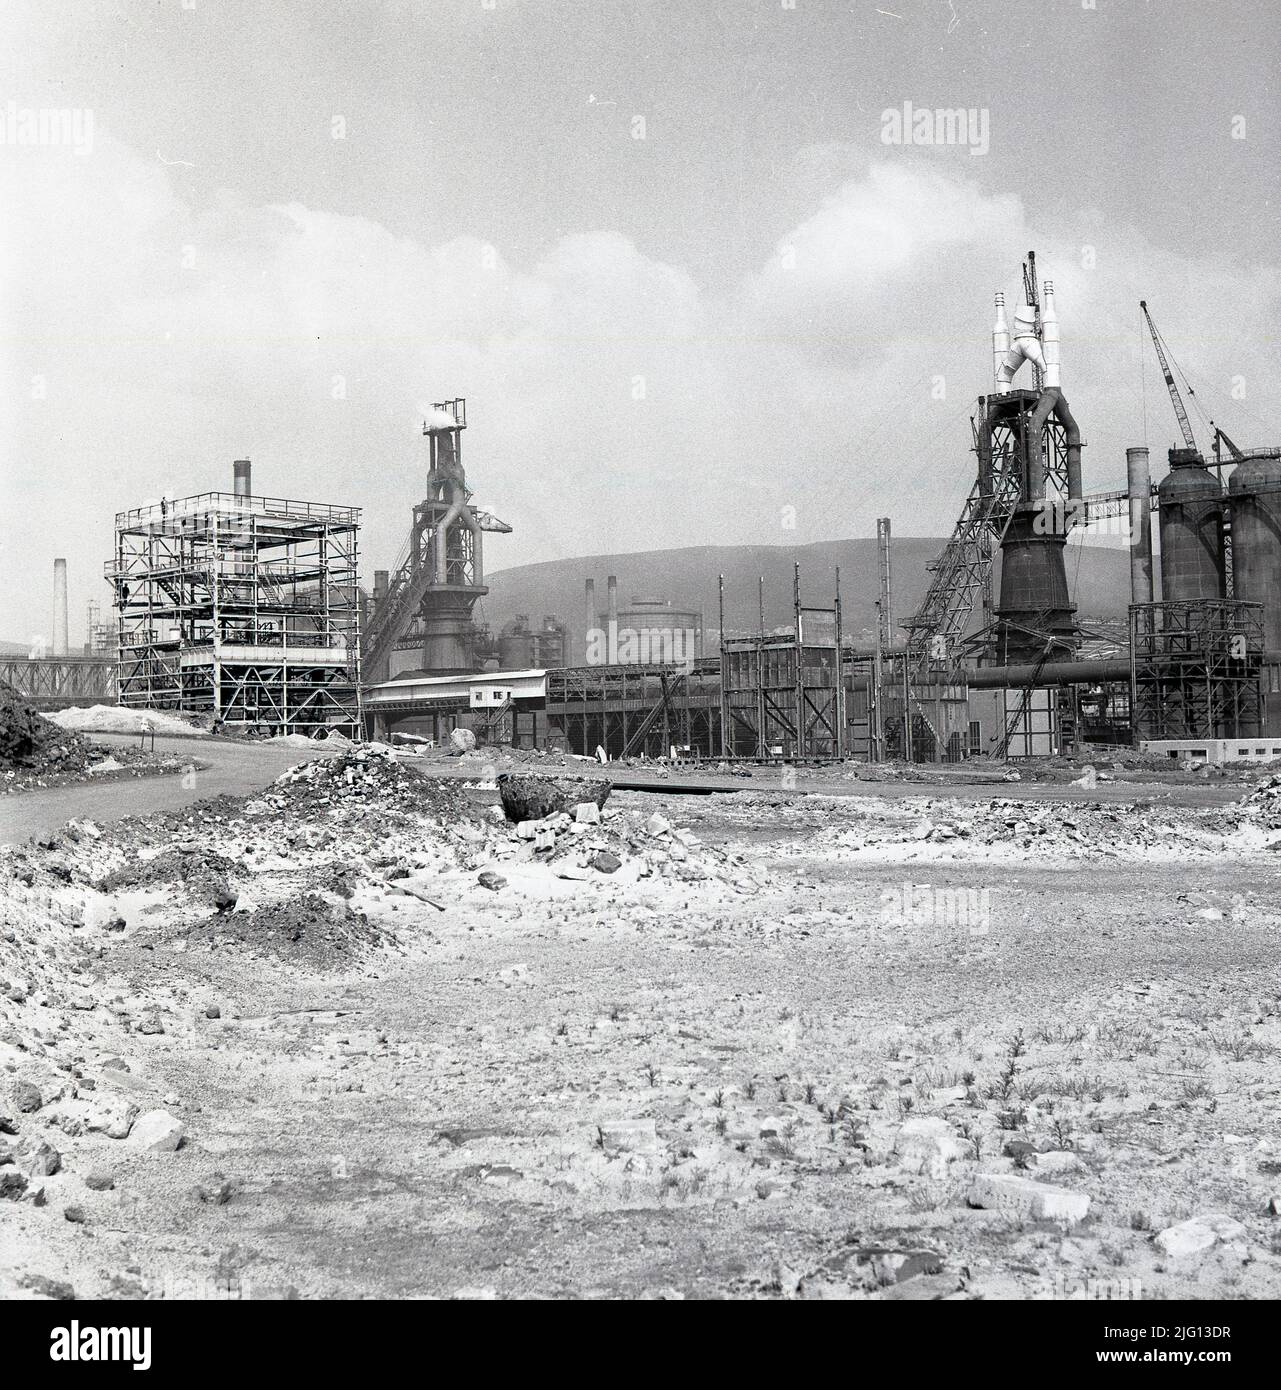 1950, historique, Port Talbot, pays de Galles, l'usine d'acier Abbey Works est en exploitation, avec d'autres zones encore en construction. Banque D'Images